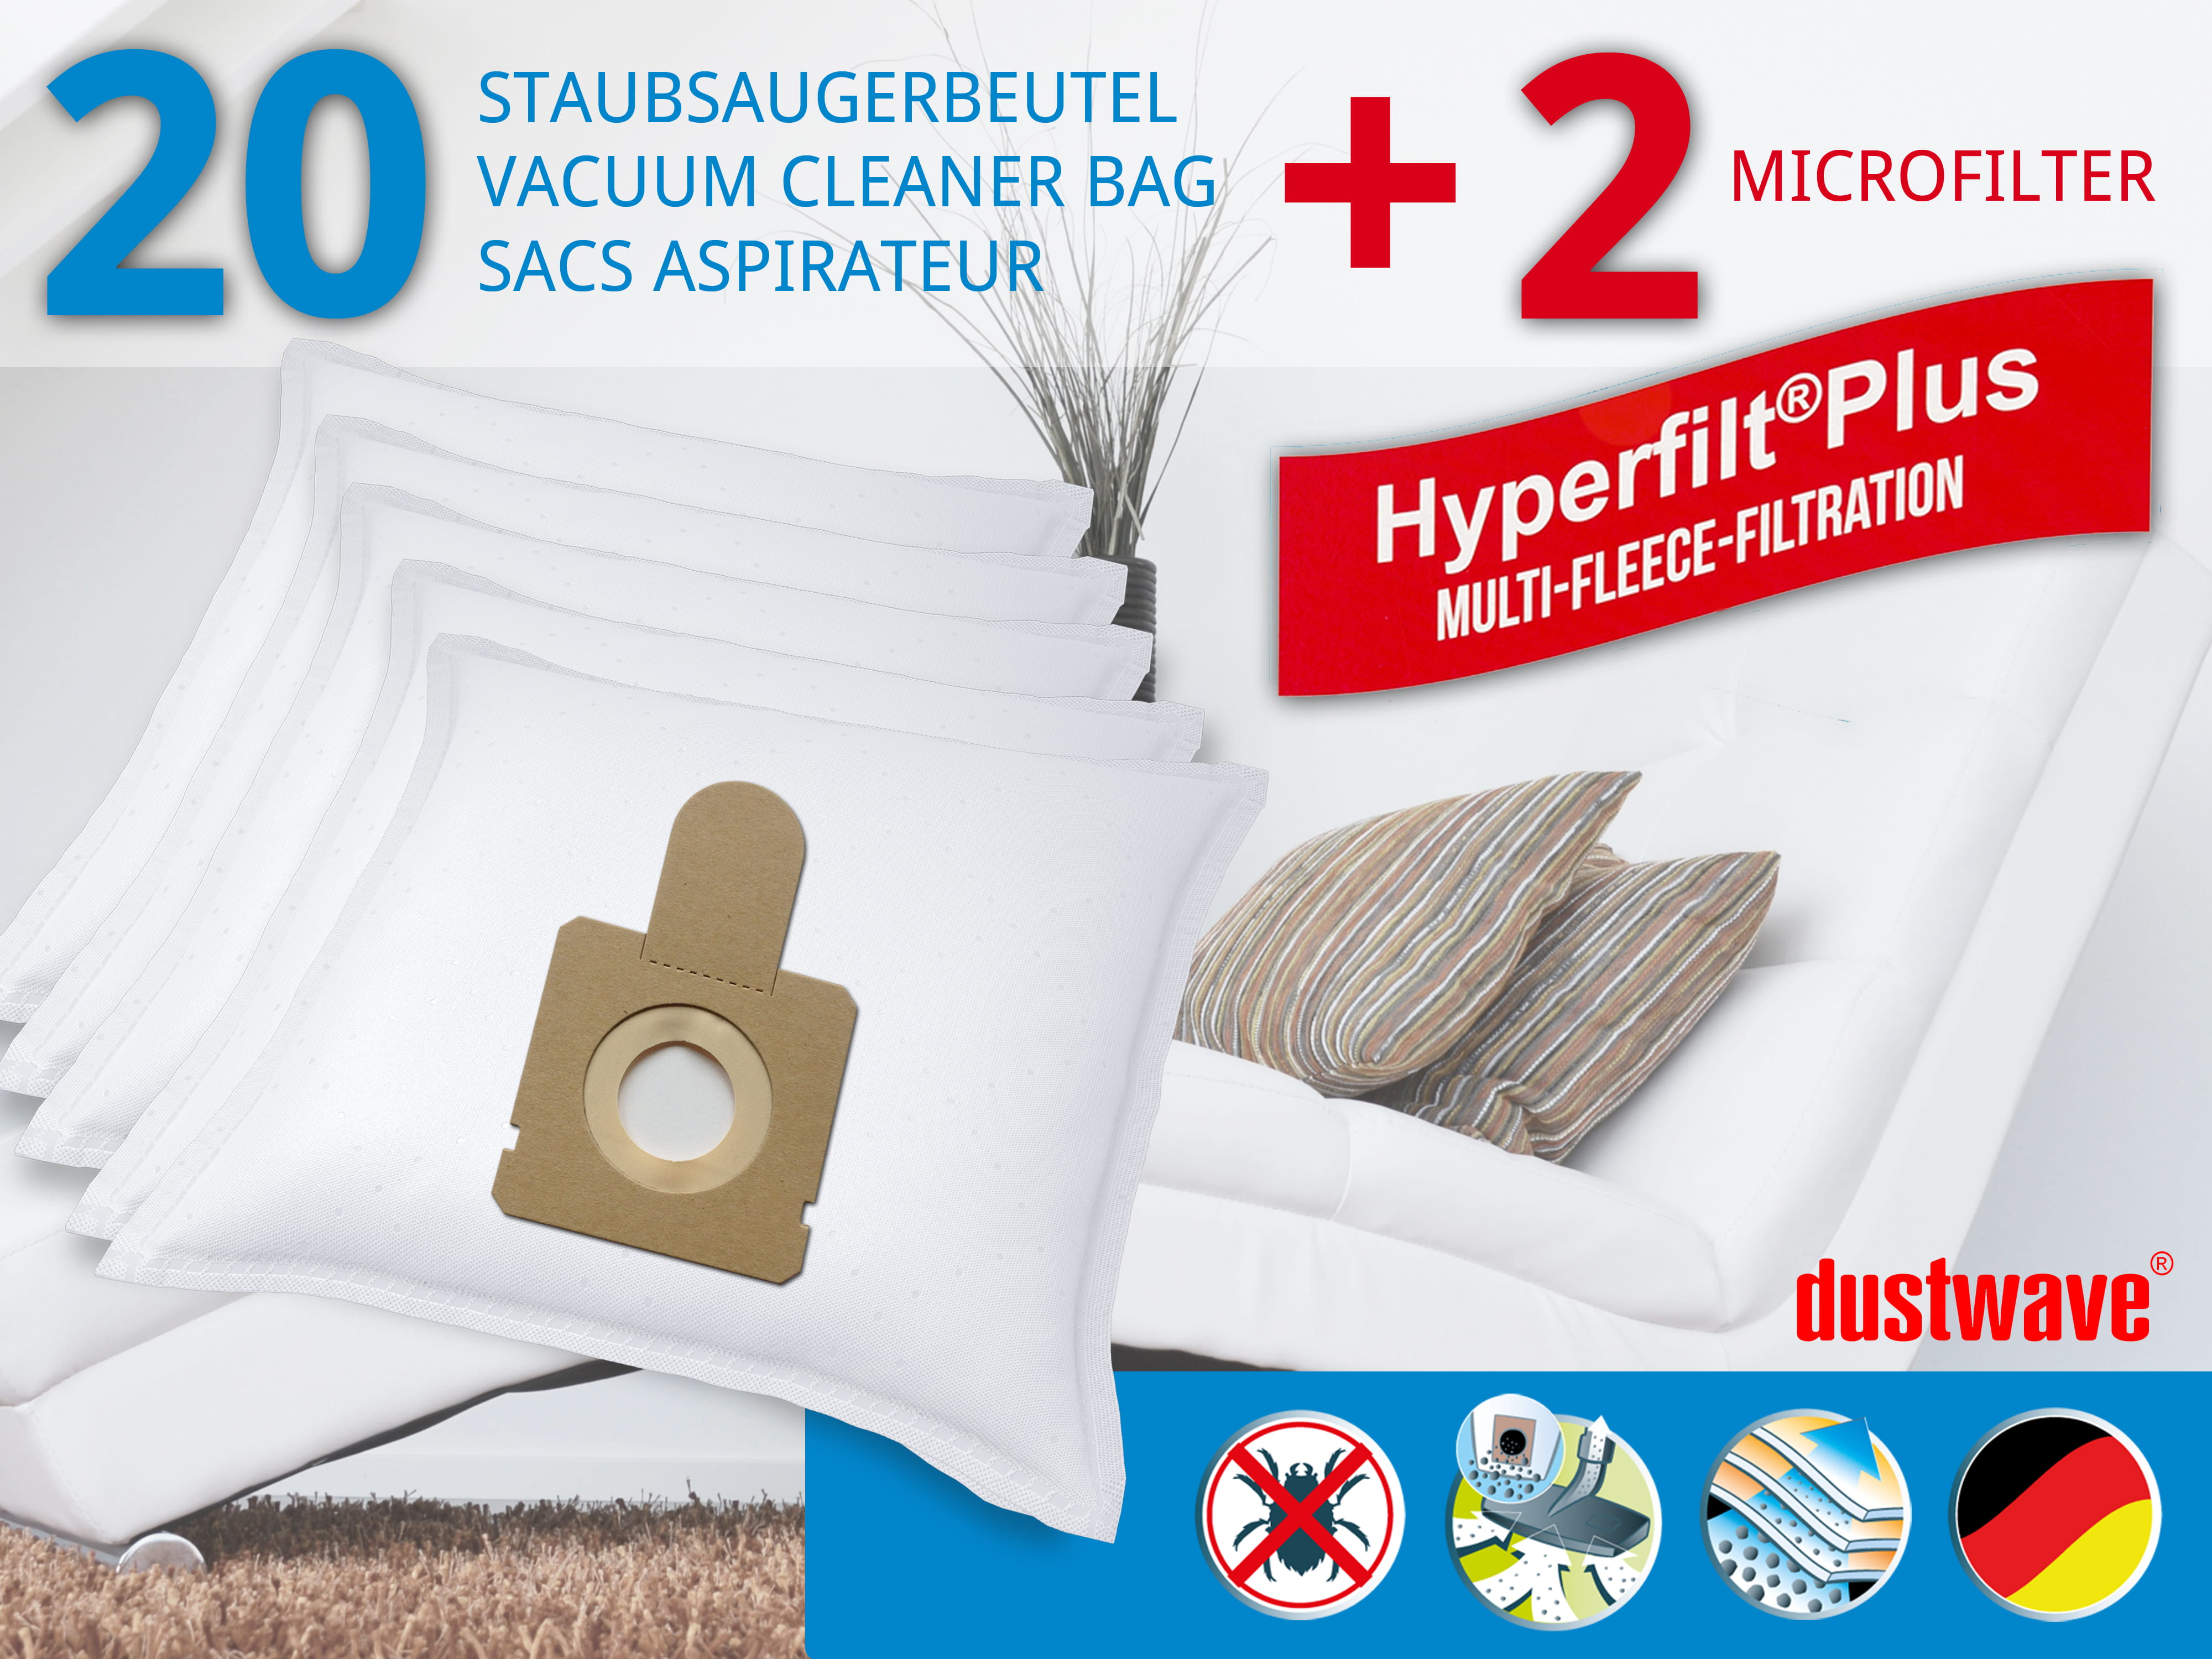 Dustwave® 20 Staubsaugerbeutel für Hoover SPRINT - hocheffizient, mehrlagiges Mikrovlies mit Hygieneverschluss - Made in Germany